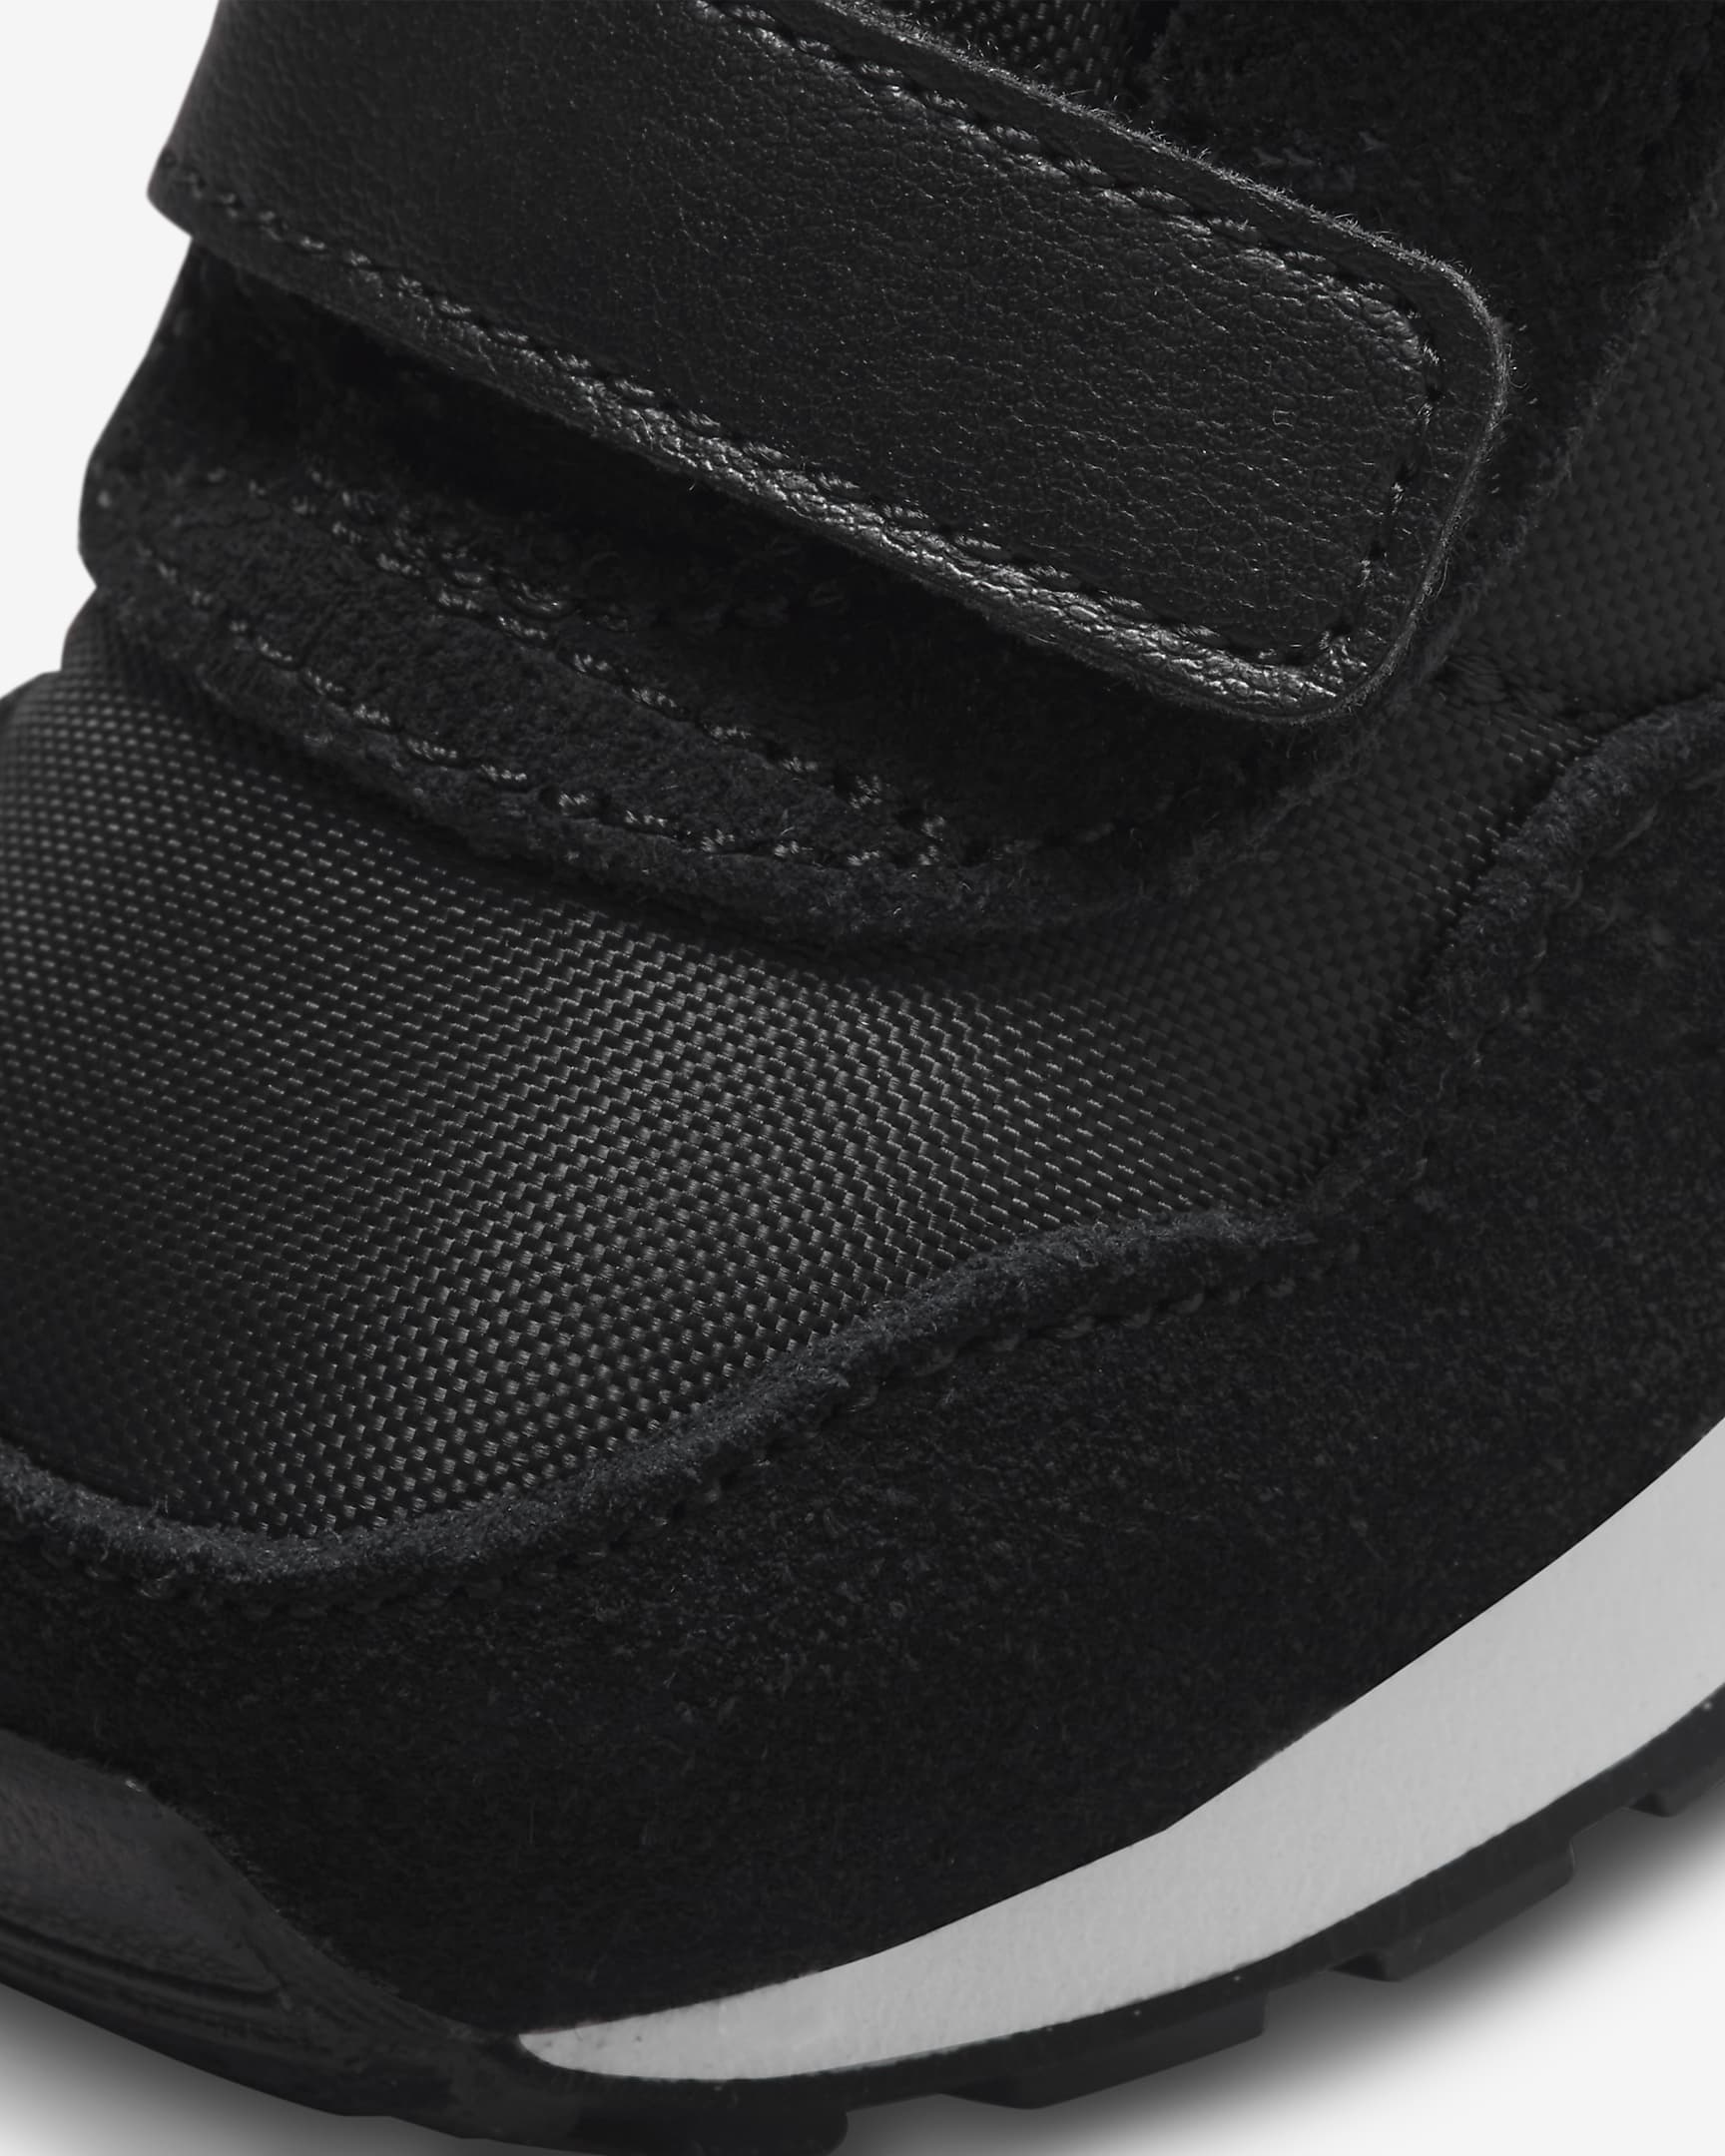 Nike MD Valiant cipő babáknak - Fekete/Fehér